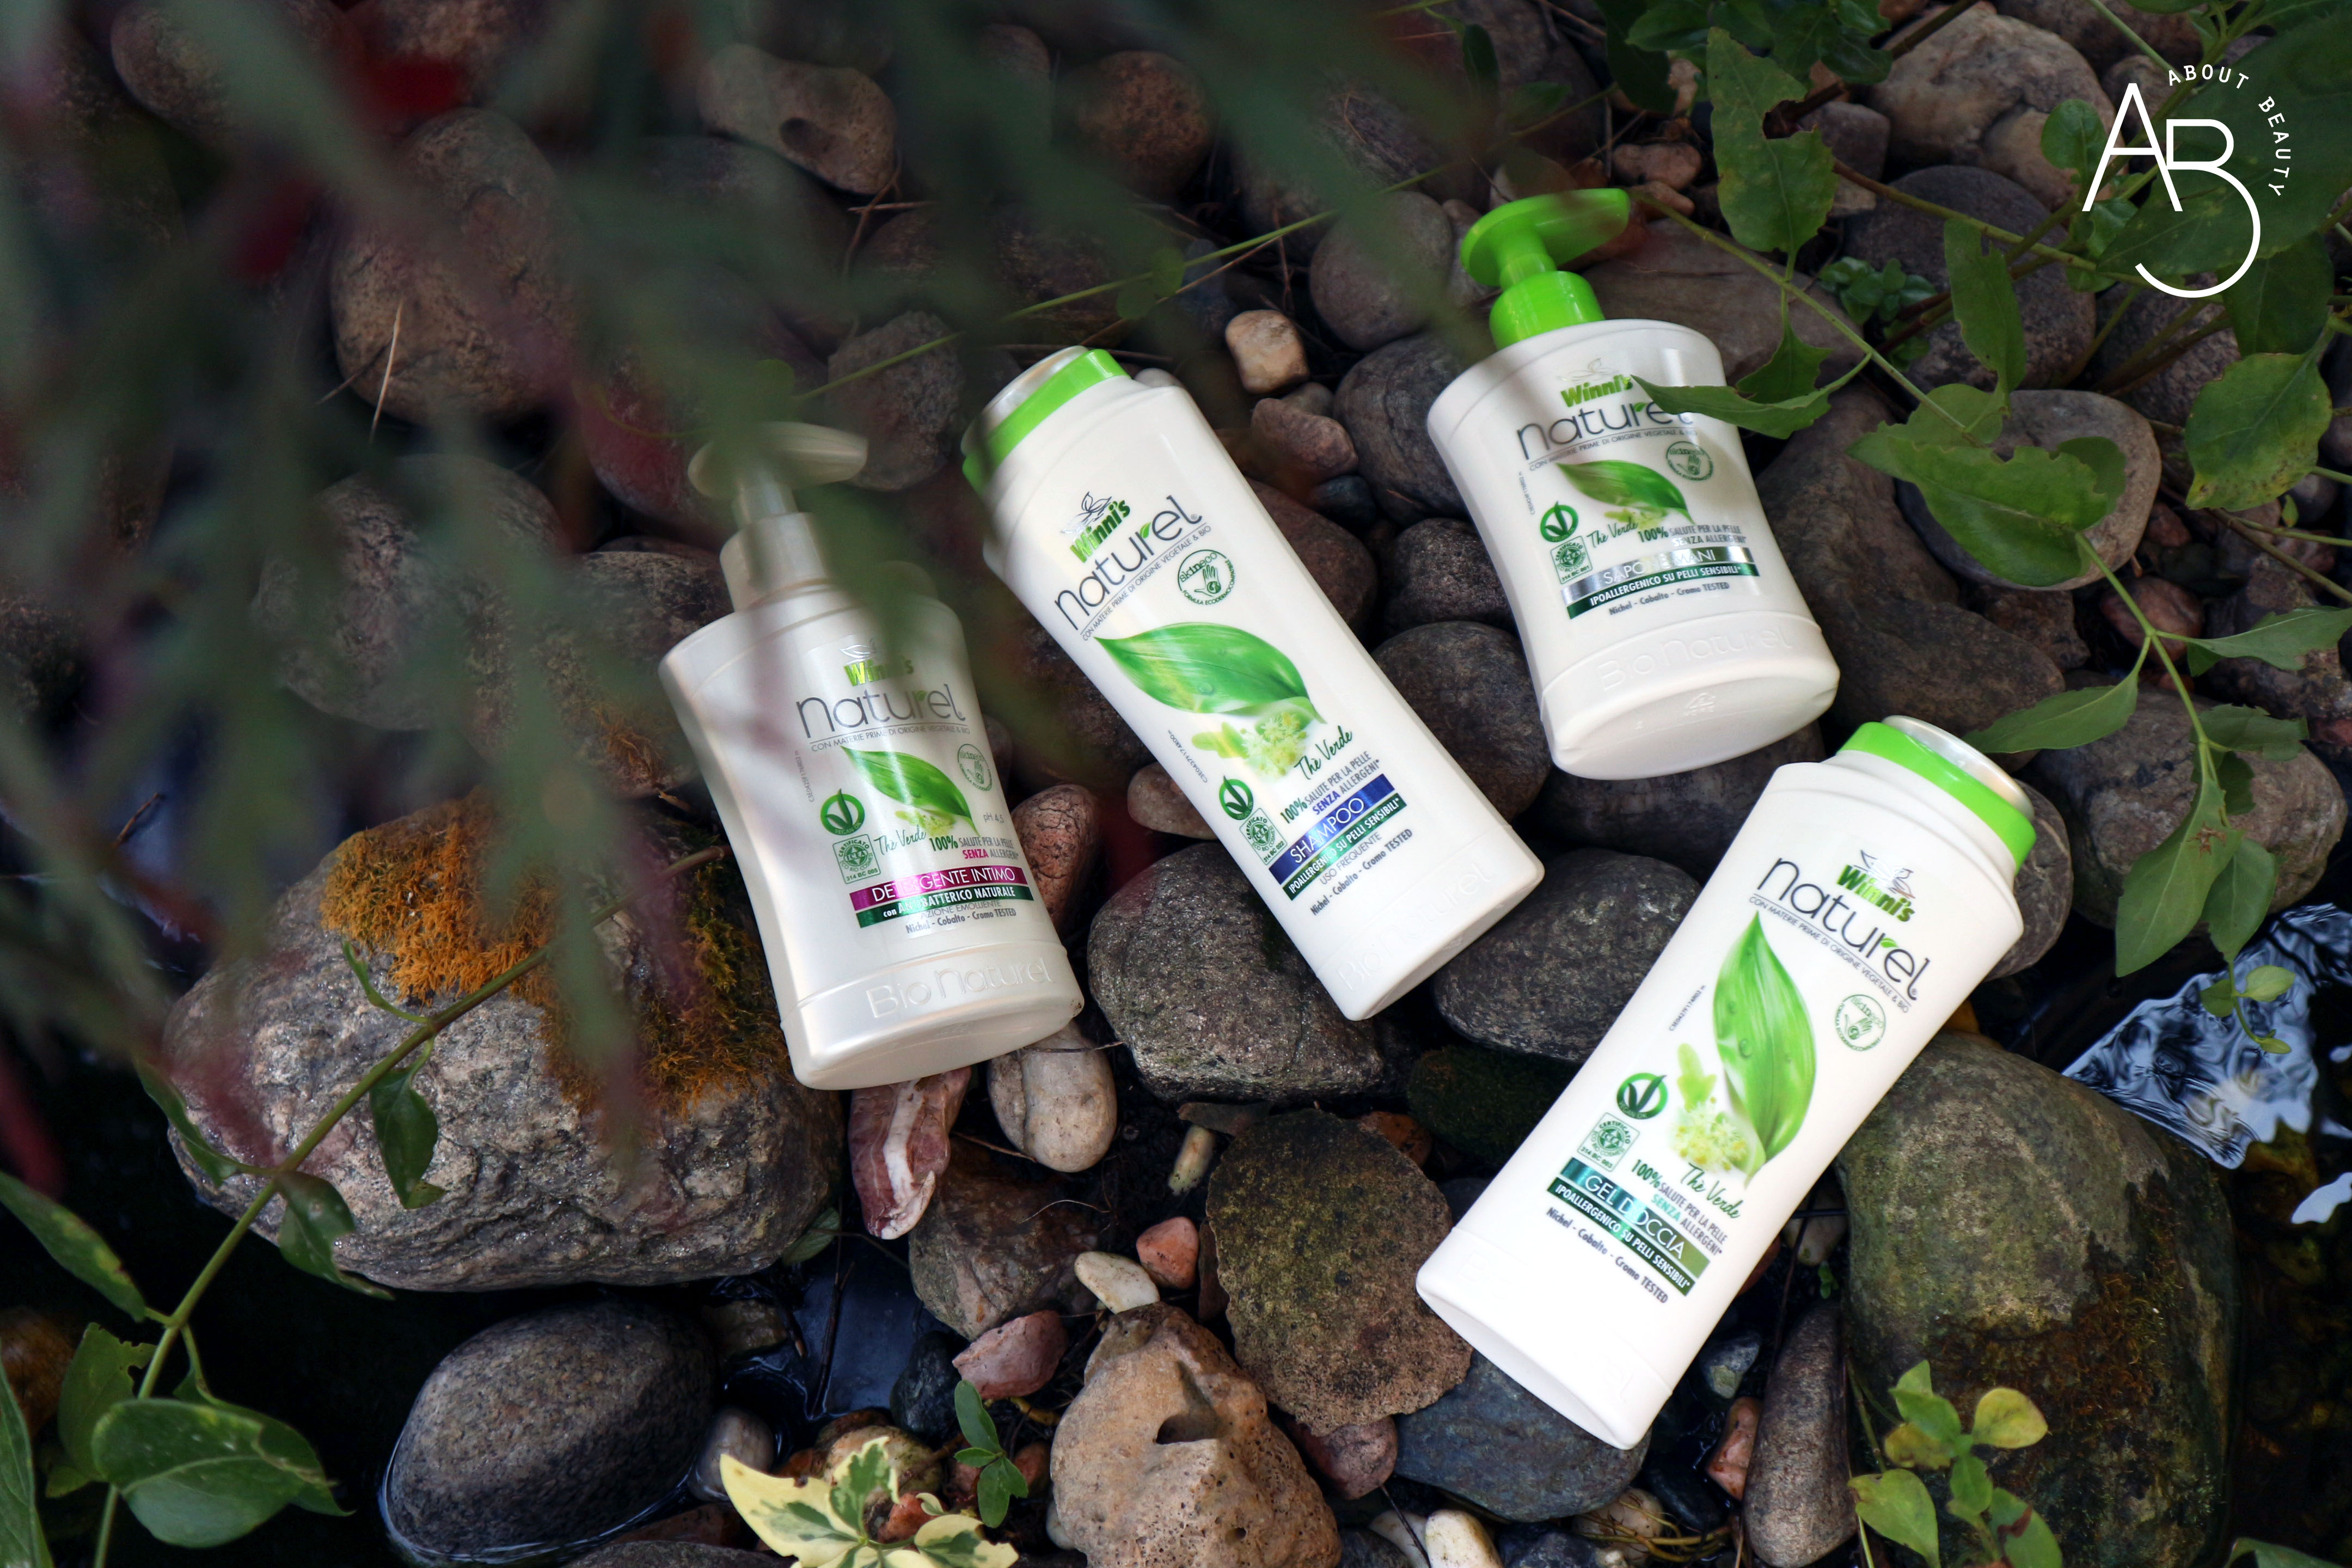 Winni's Naturel Cura della Persona - detergente intimo mani shampoo gel doccia te verde - info, opinioni, recensione, review, prezzo, dove acquistare - About beauty